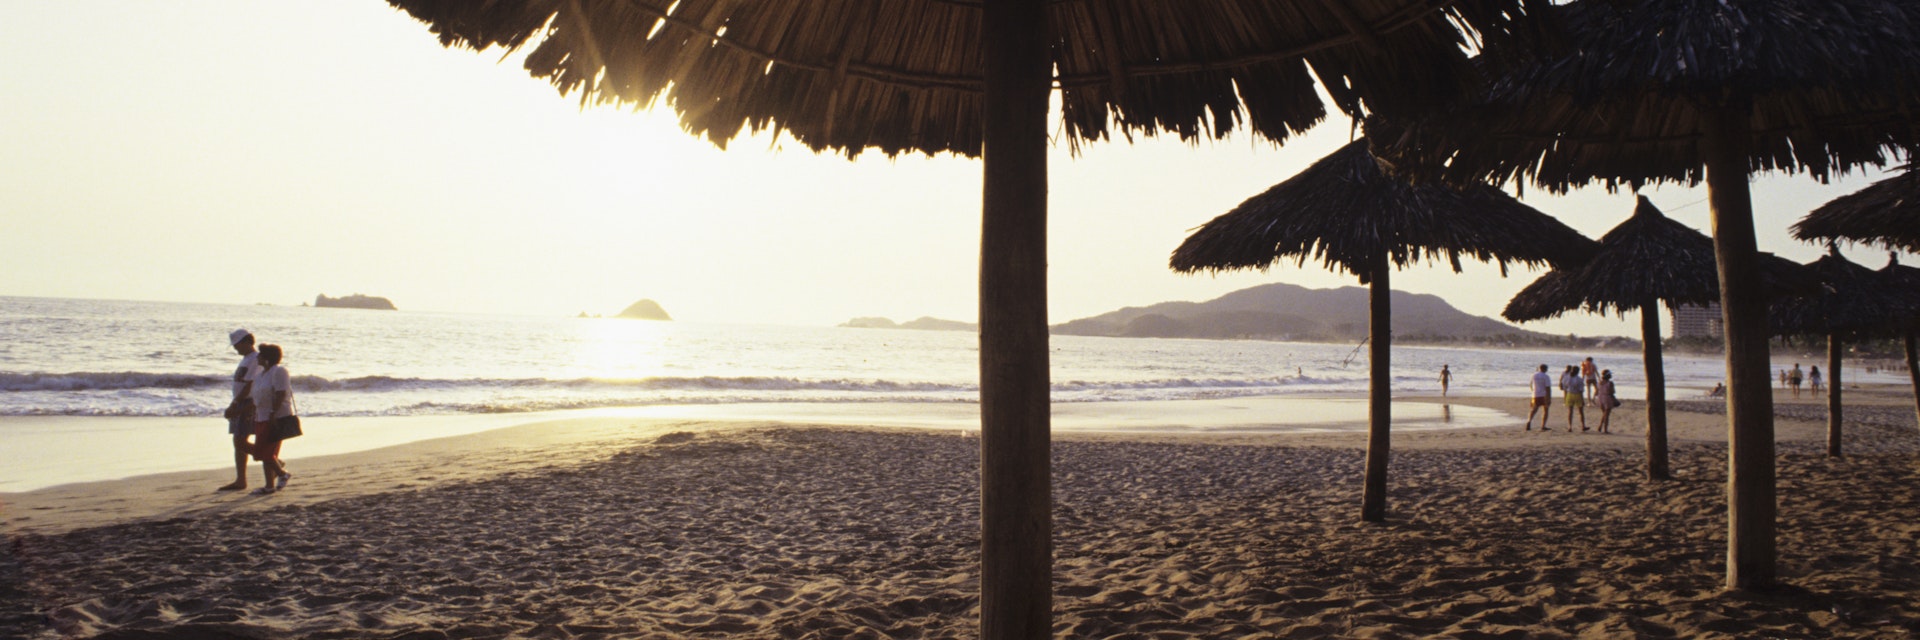 Mexico, Ixtapa, ocean sunset with couples walking along shoreline, umbrellas in sand.